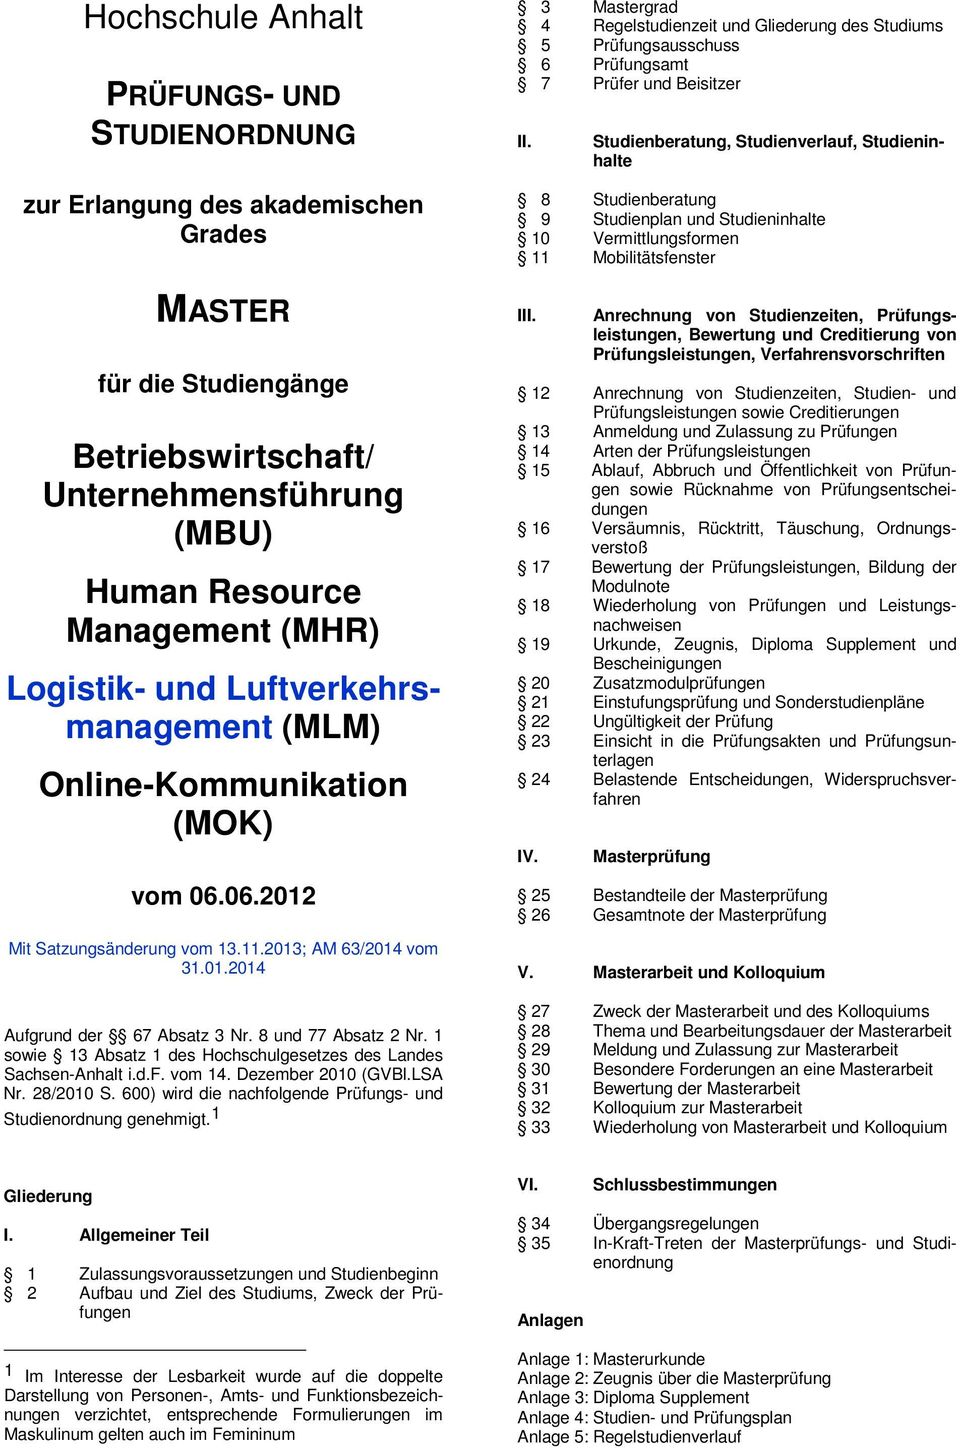 1 sowie 13 Absatz 1 des Hochschulgesetzes des Landes Sachsen-Anhalt i.d.f. vom 14. Dezember 2010 (GVBl.LSA Nr. 28/2010 S. 600) wird die nachfolgende Prüfungs- und Studienordnung genehmigt.